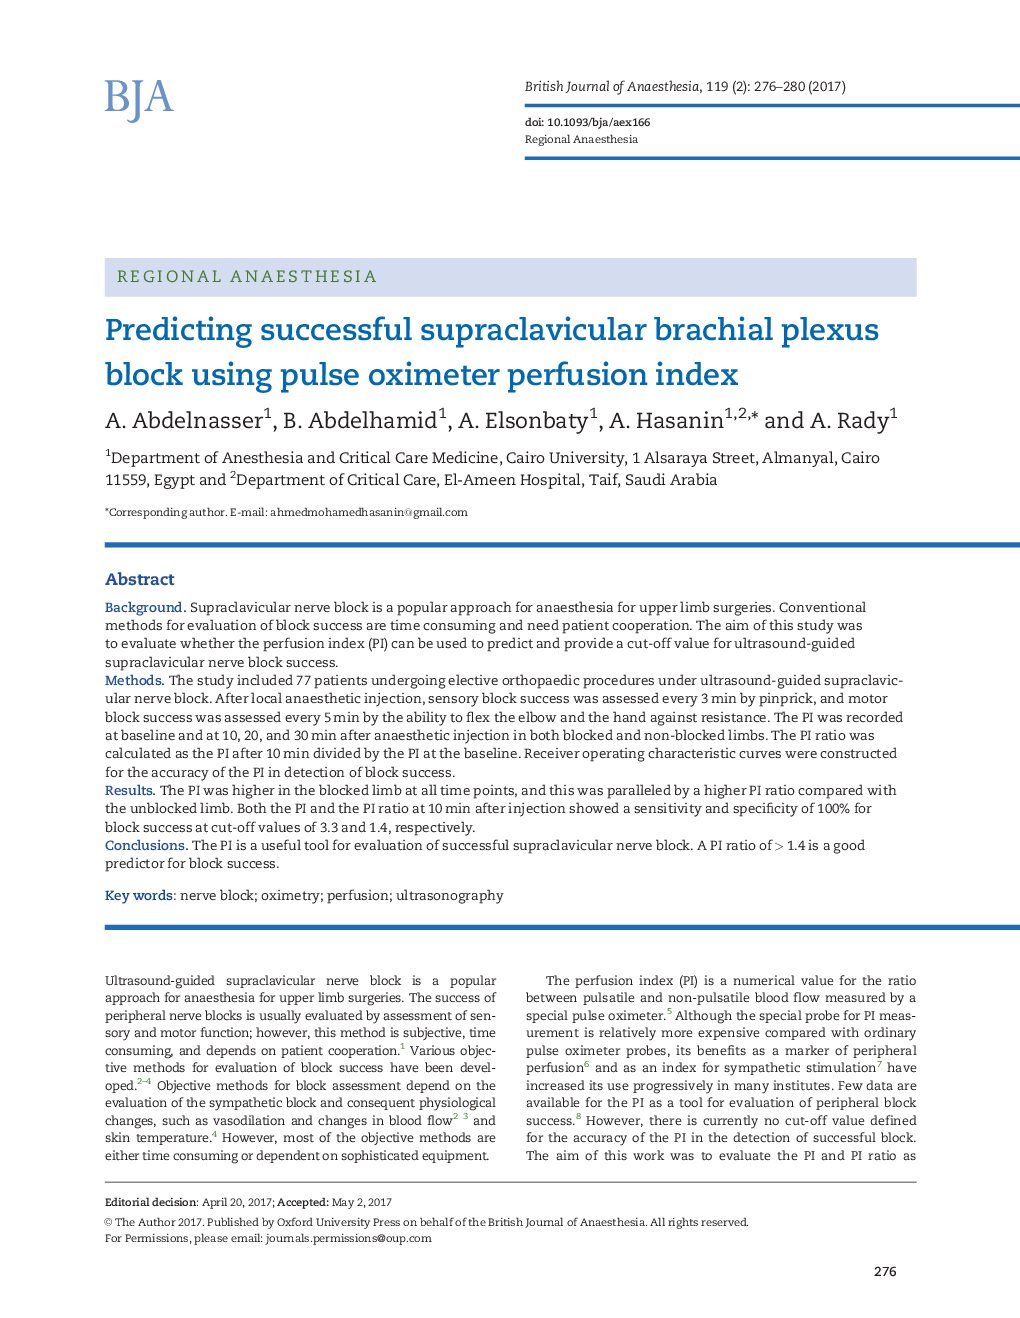 پیش بینی بلوک انعقادی برونچی مغزی موفق با استفاده از شاخص پرفیوژن پالس اکسیمتر 